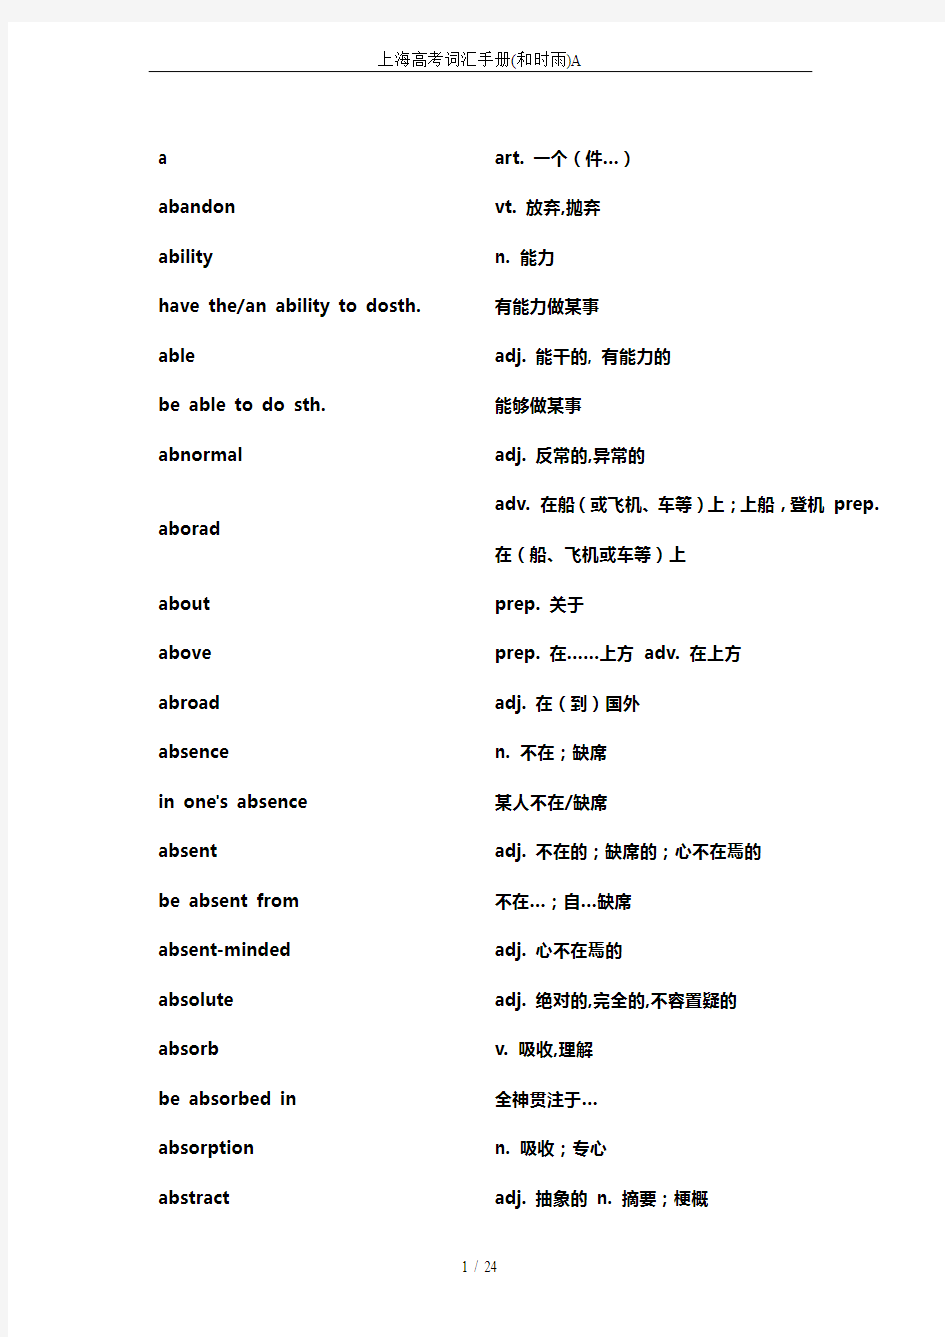 上海高考词汇手册(和时雨)A